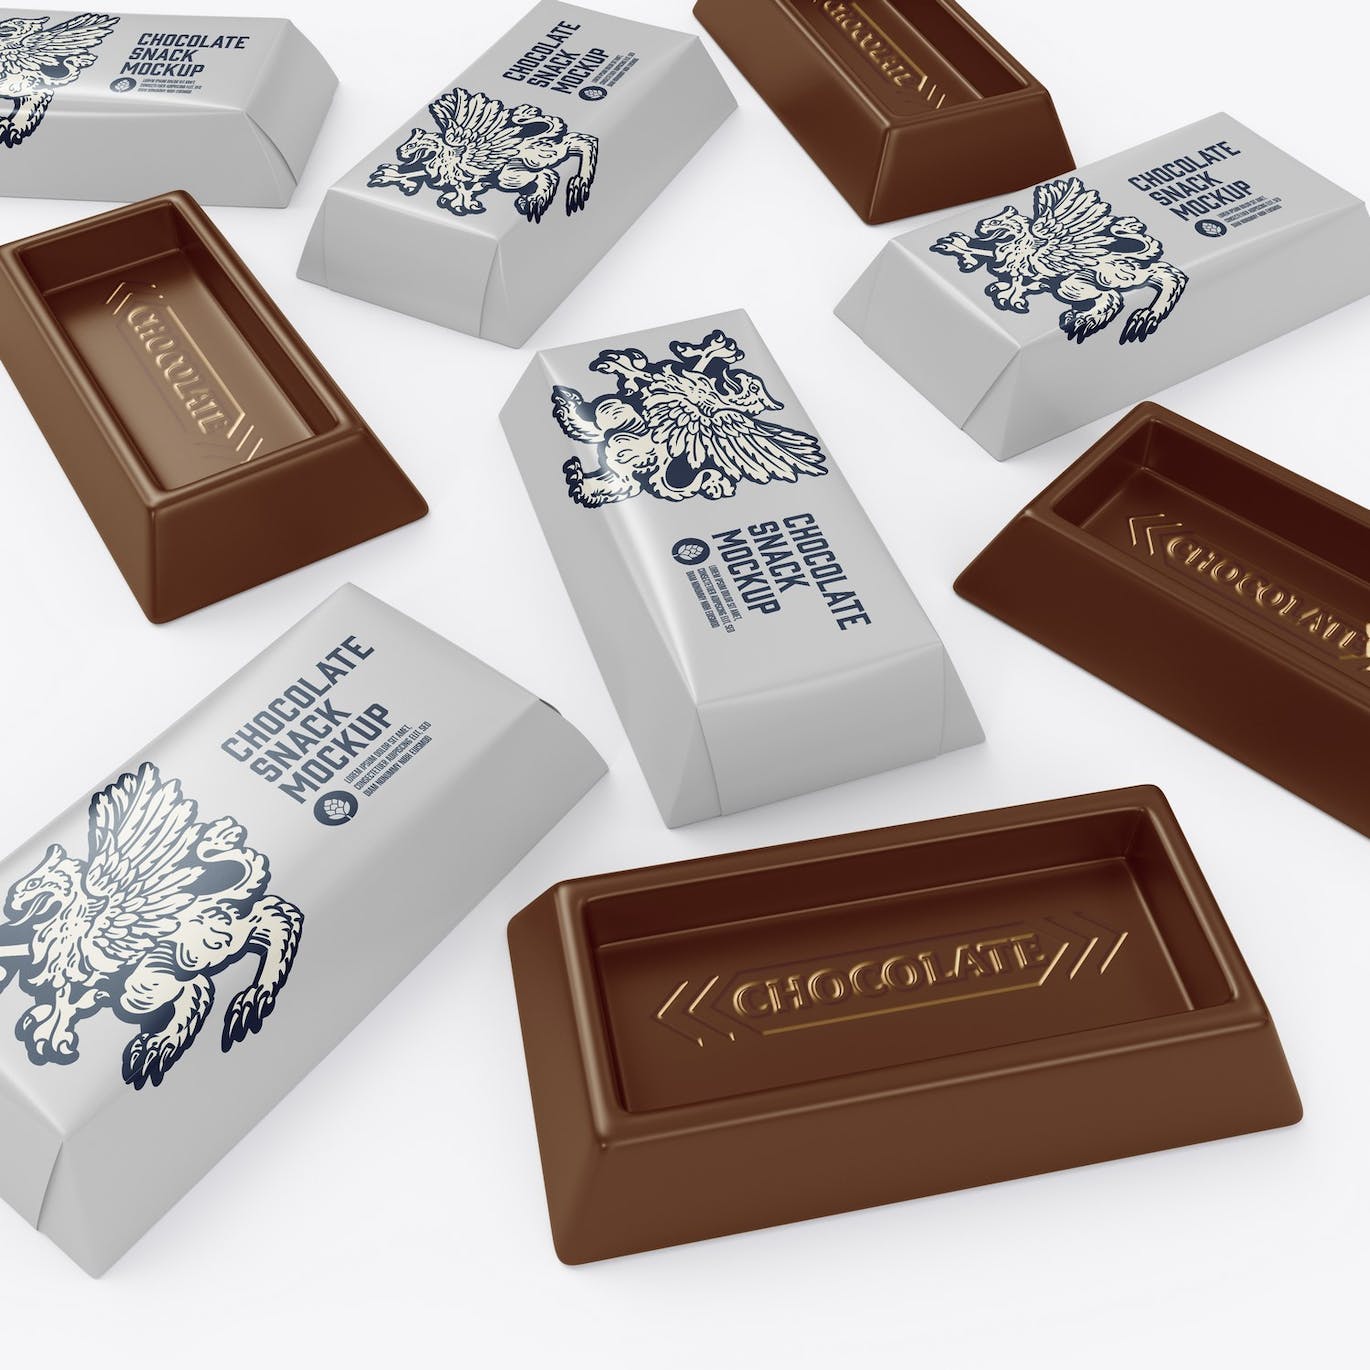 巧克力零食小包装设计样机模板 Small Pack Chocolates Mockup 样机素材 第14张